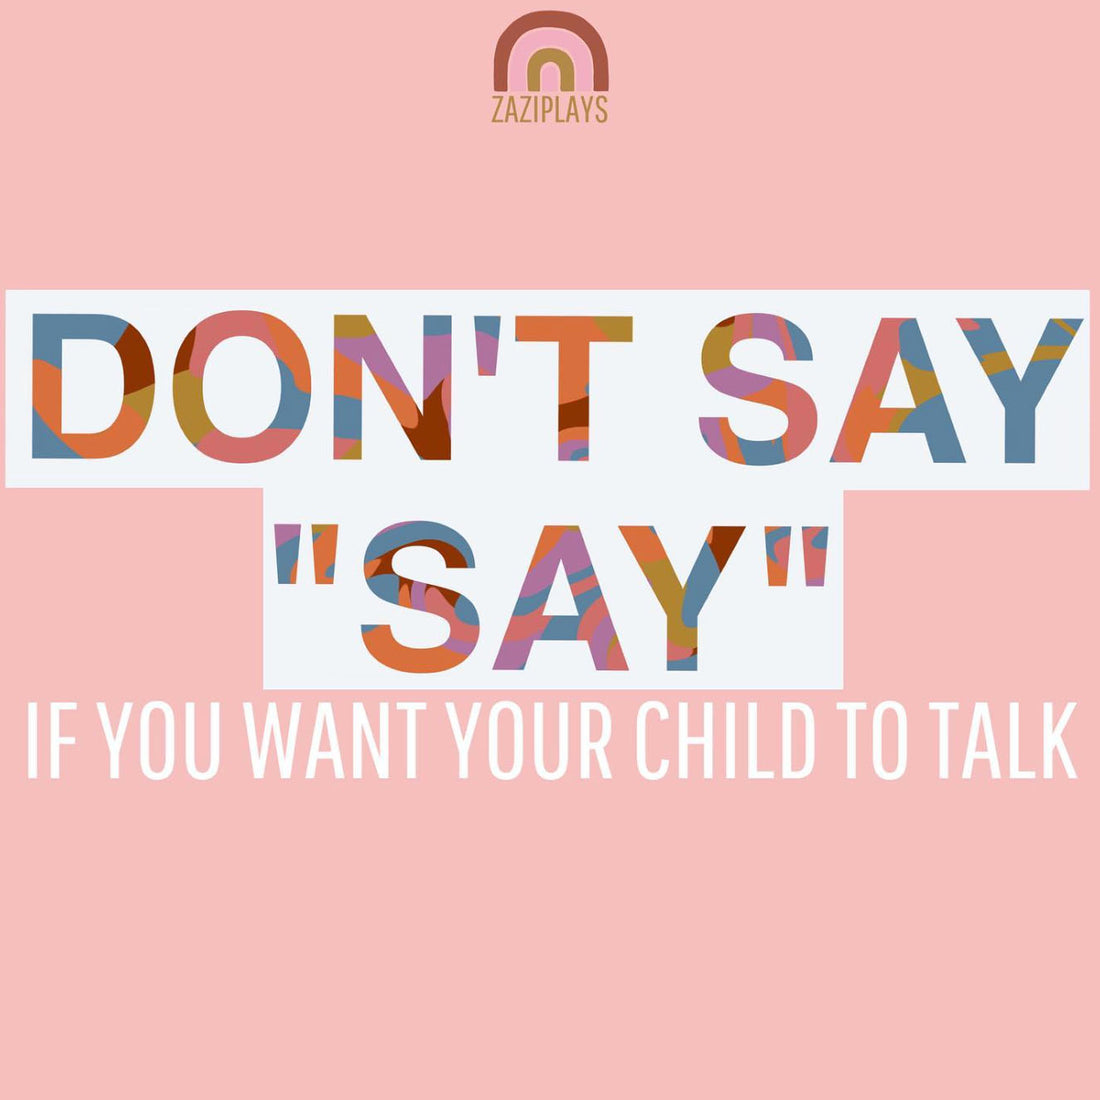 Don't say 'Say'